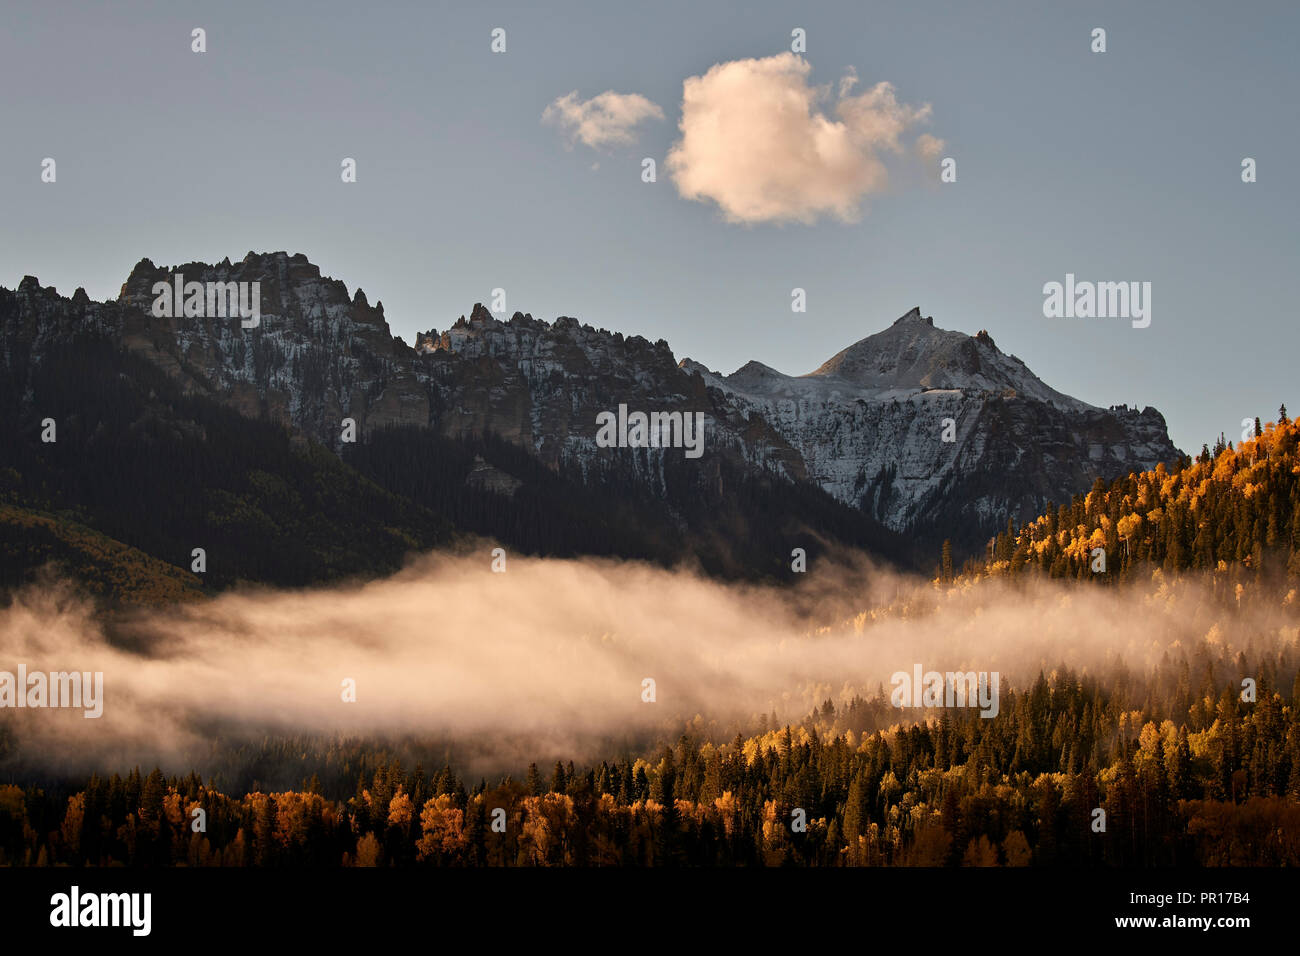 Coperte di neve montagna in autunno con la nebbia, Uncompahgre National Forest, Colorado, Stati Uniti d'America, America del Nord Foto Stock